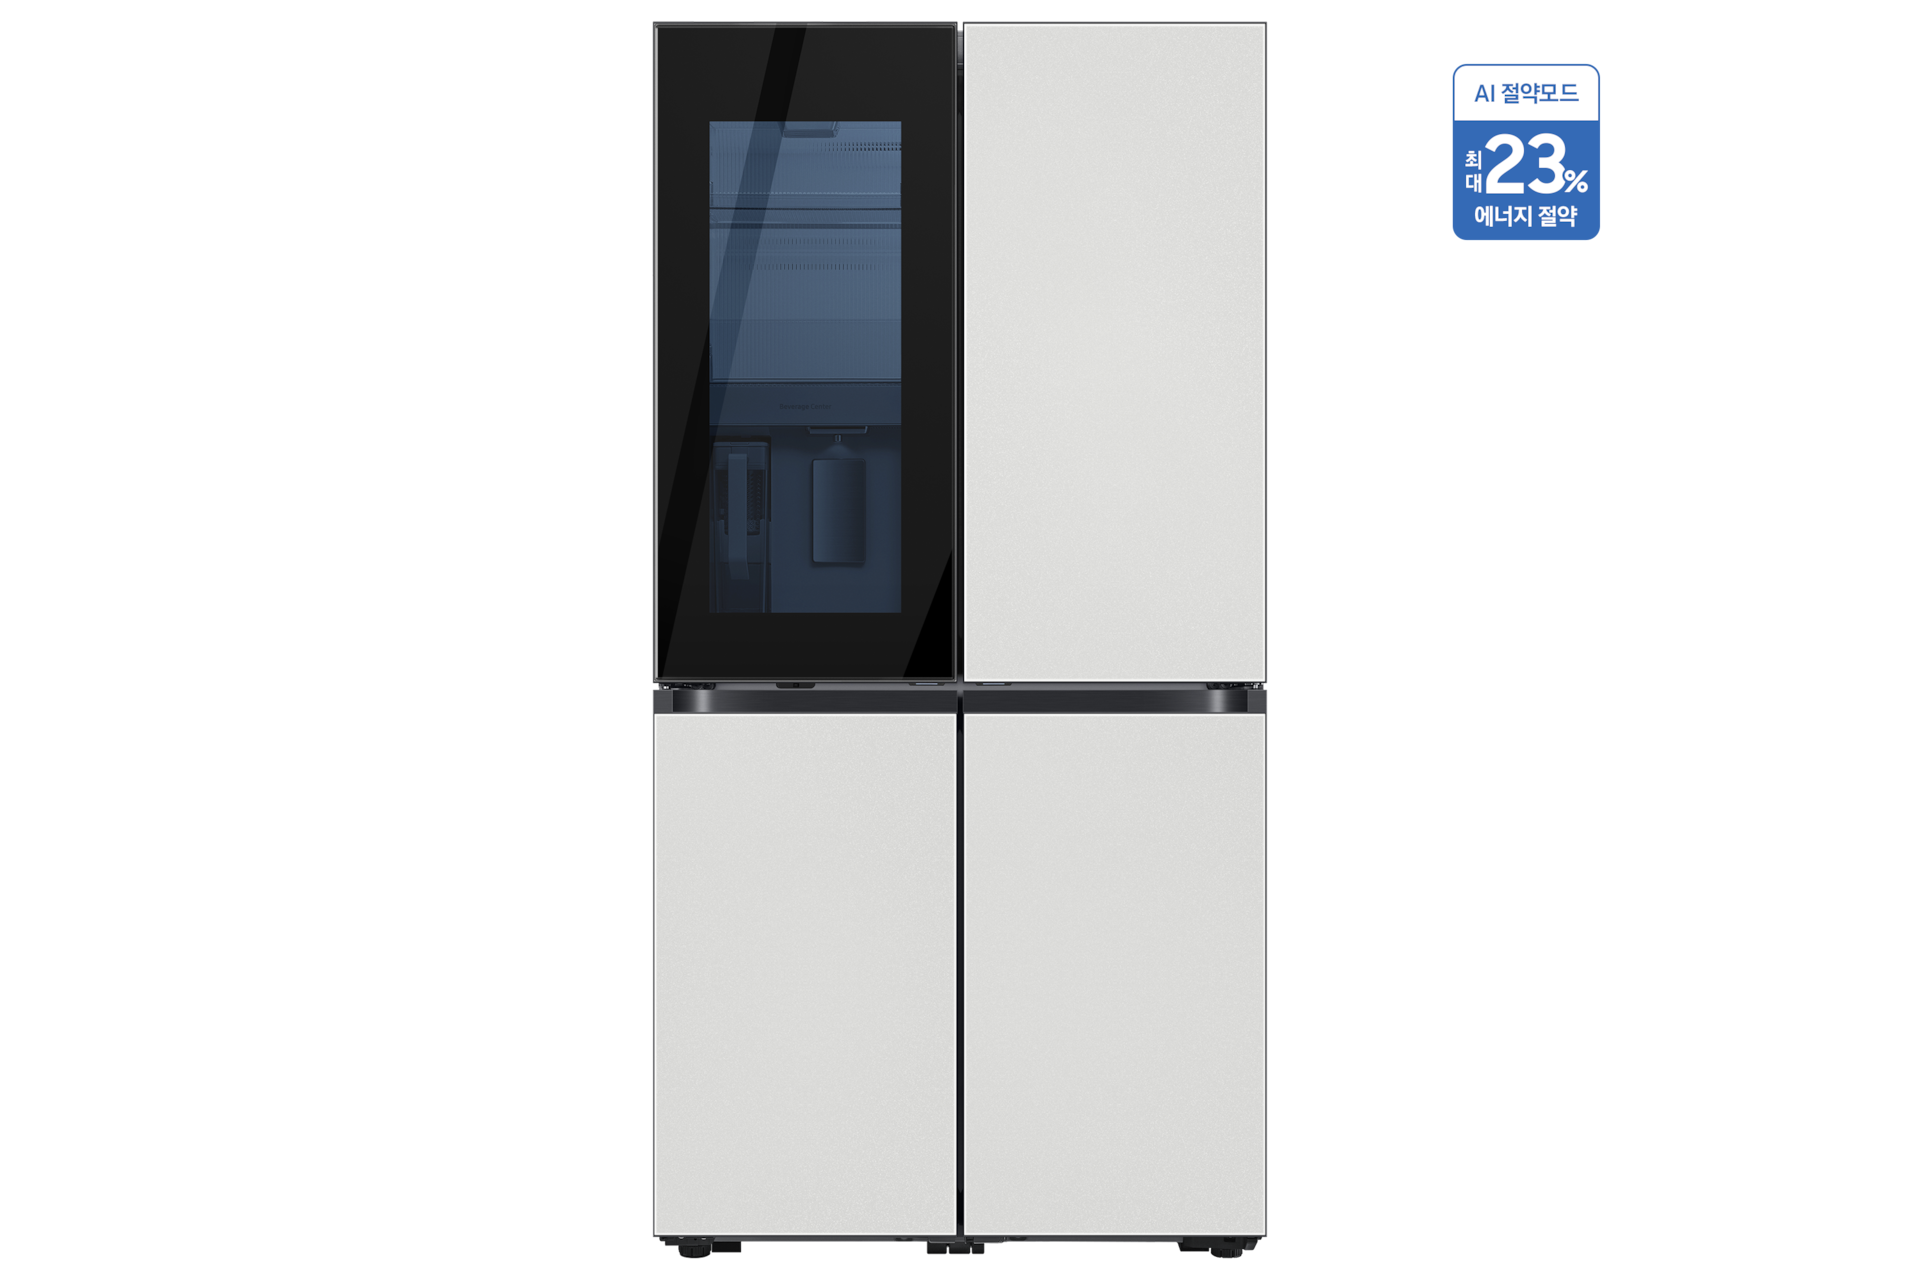 BESPOKE 정수기 냉장고 4도어 830 L 코타 화이트 정면, 우측 상단 AI 절약 모드 사용시 최대 23%까지 에너지 절약 태그 부착